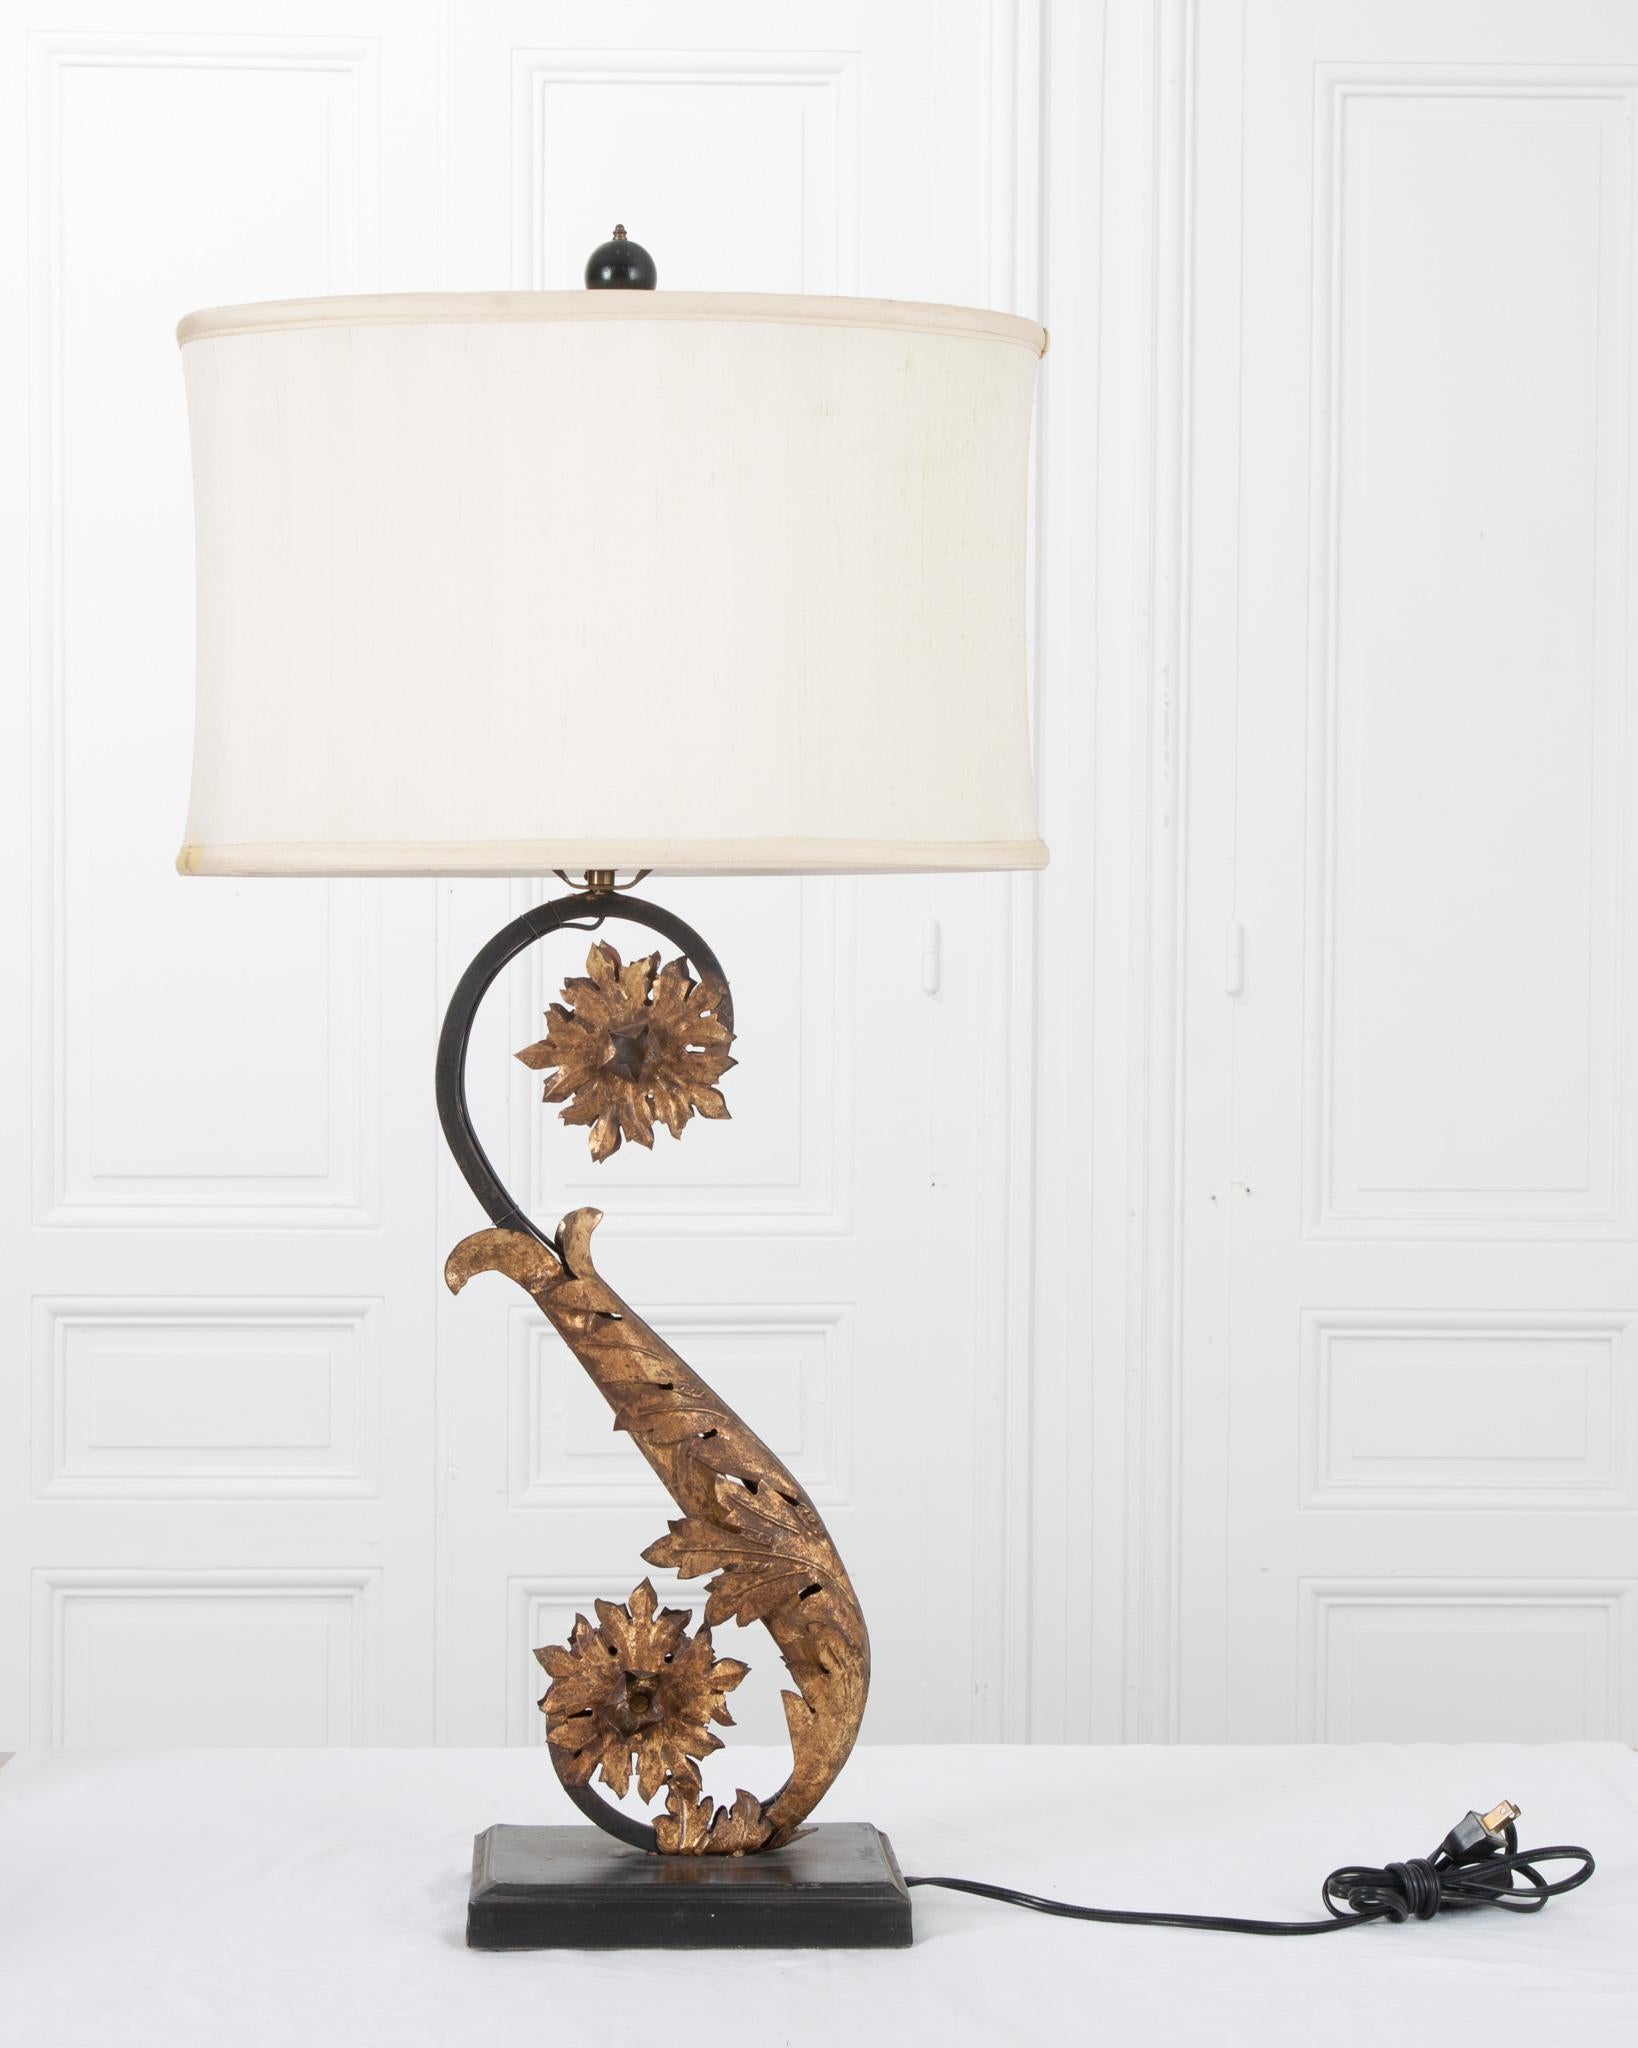 Cette élégante lampe de reproduction italienne s'intègre parfaitement à un décor moderne ou ancien ! Equipé d'un abat-jour en soie de forme ovale personnalisé. La lampe présente des feuilles et des fleurs dorées détaillées enroulées autour du corps